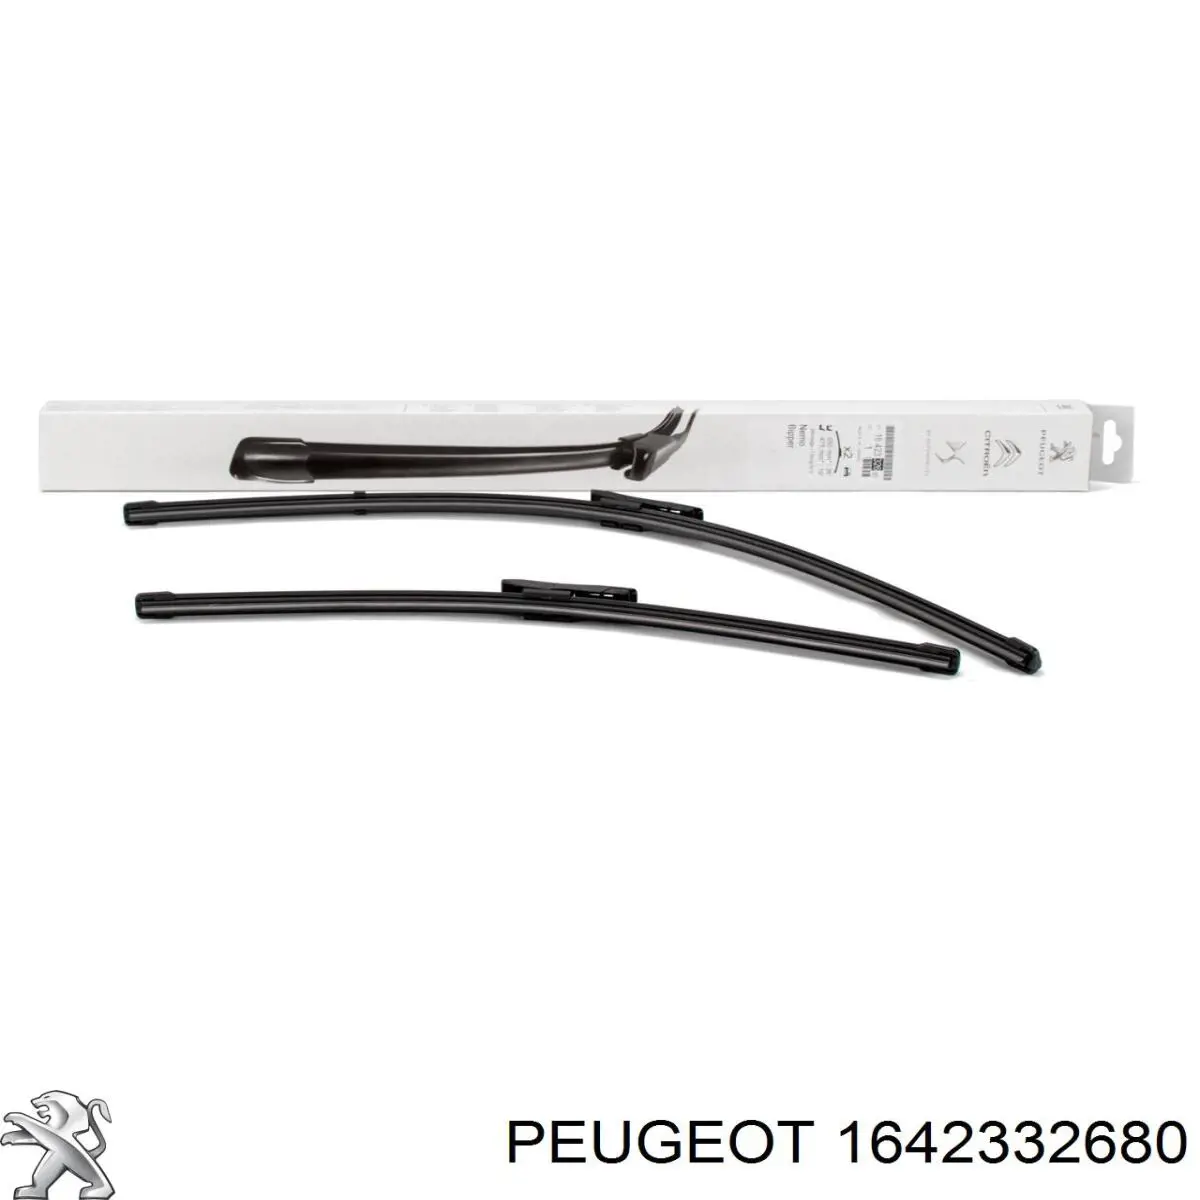 1642332680 Peugeot/Citroen щетка-дворник лобового стекла, комплект из 2 шт.